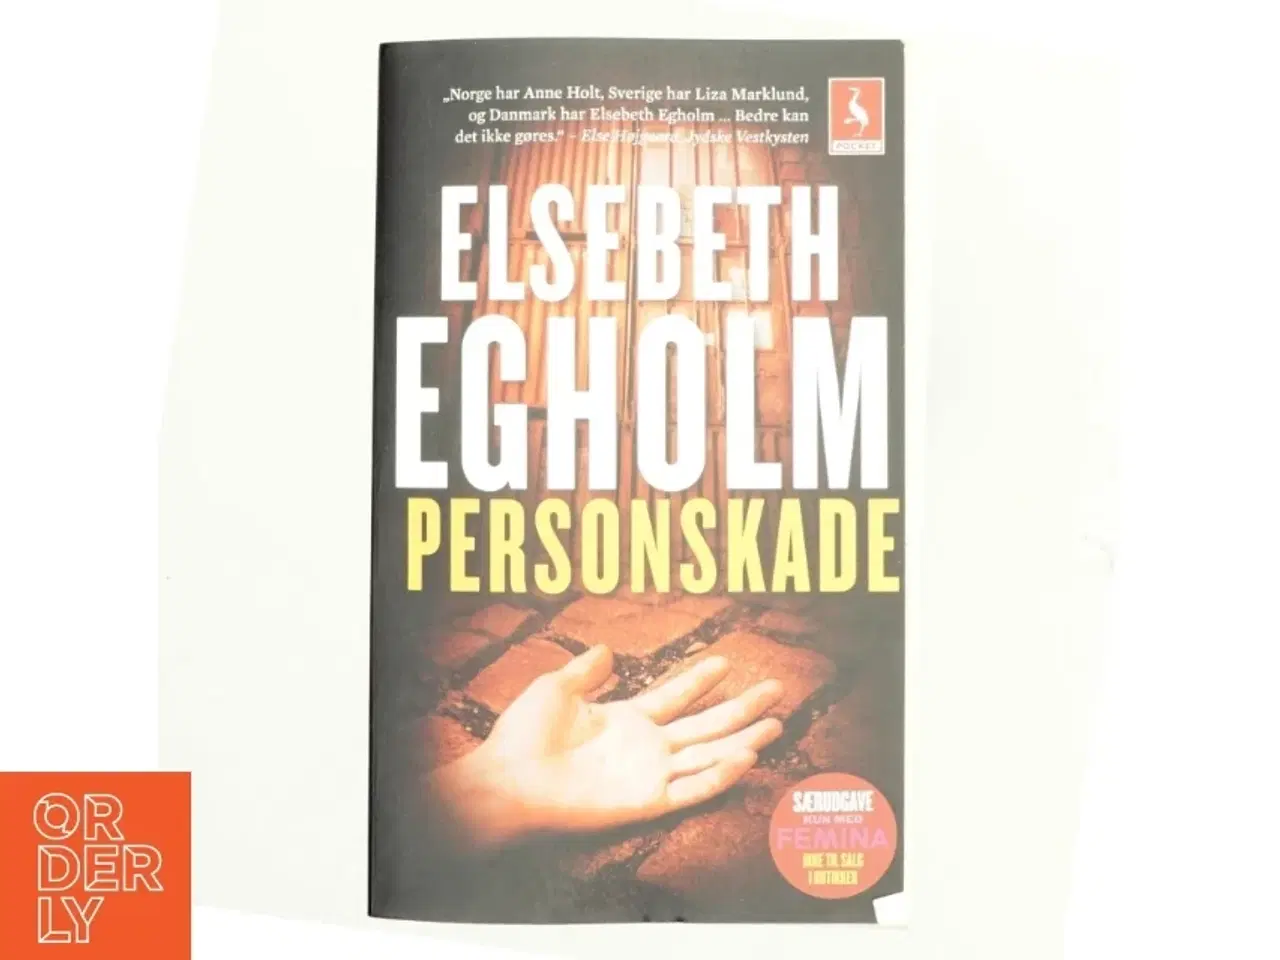 Billede 1 - Personskade af Elsebeth Egholm (Bog)